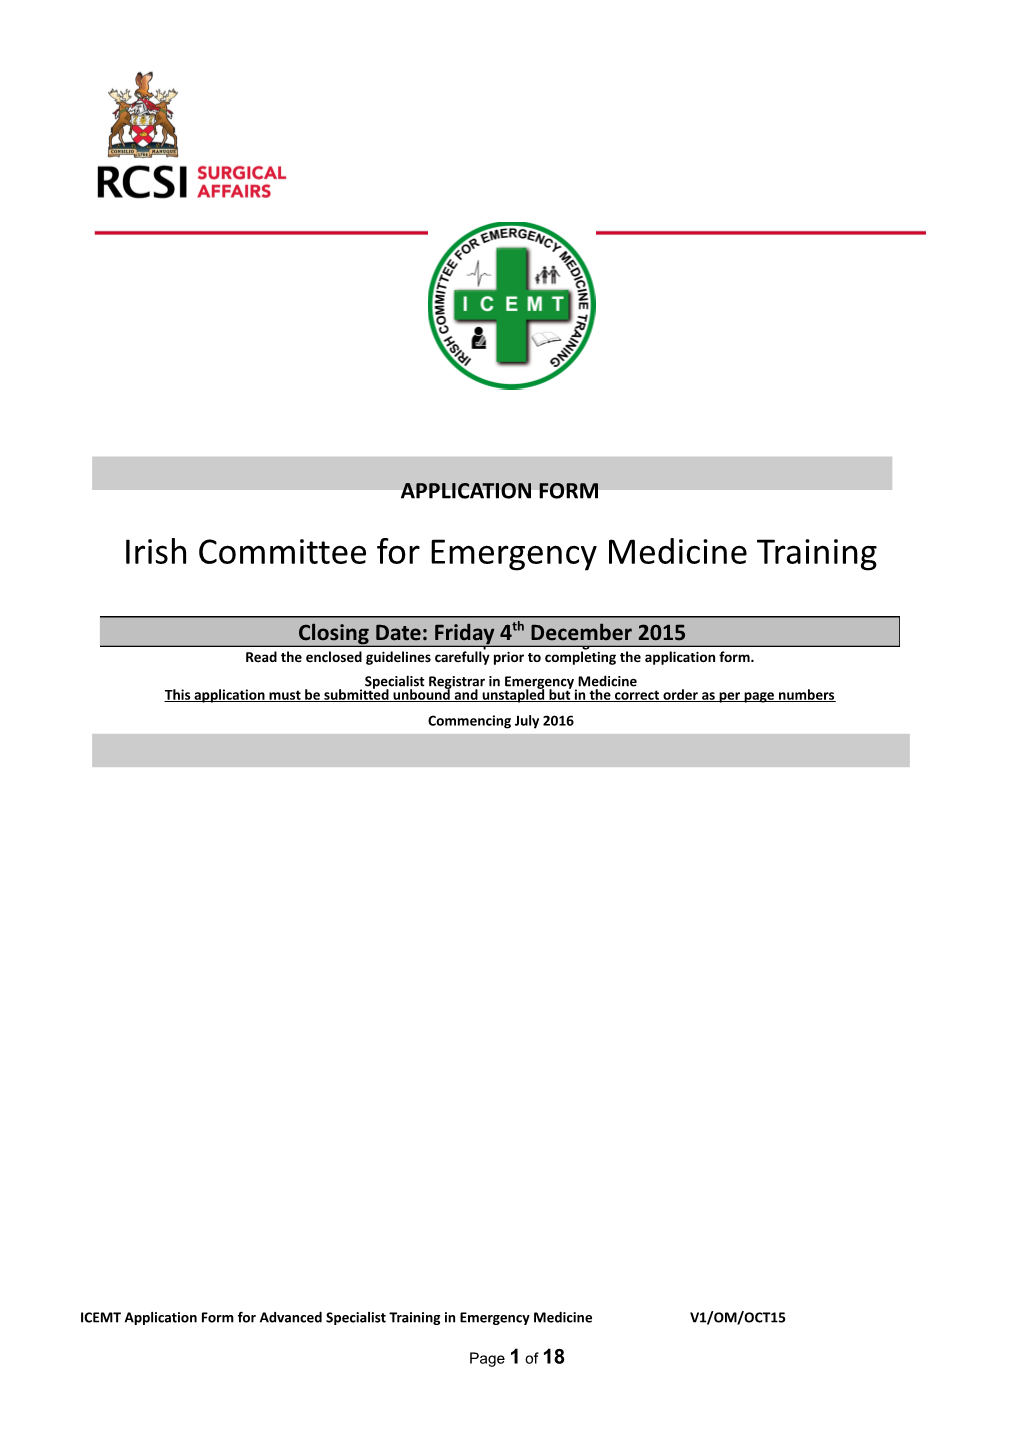 ACEMT Application Form for HST in Emergency Medicine